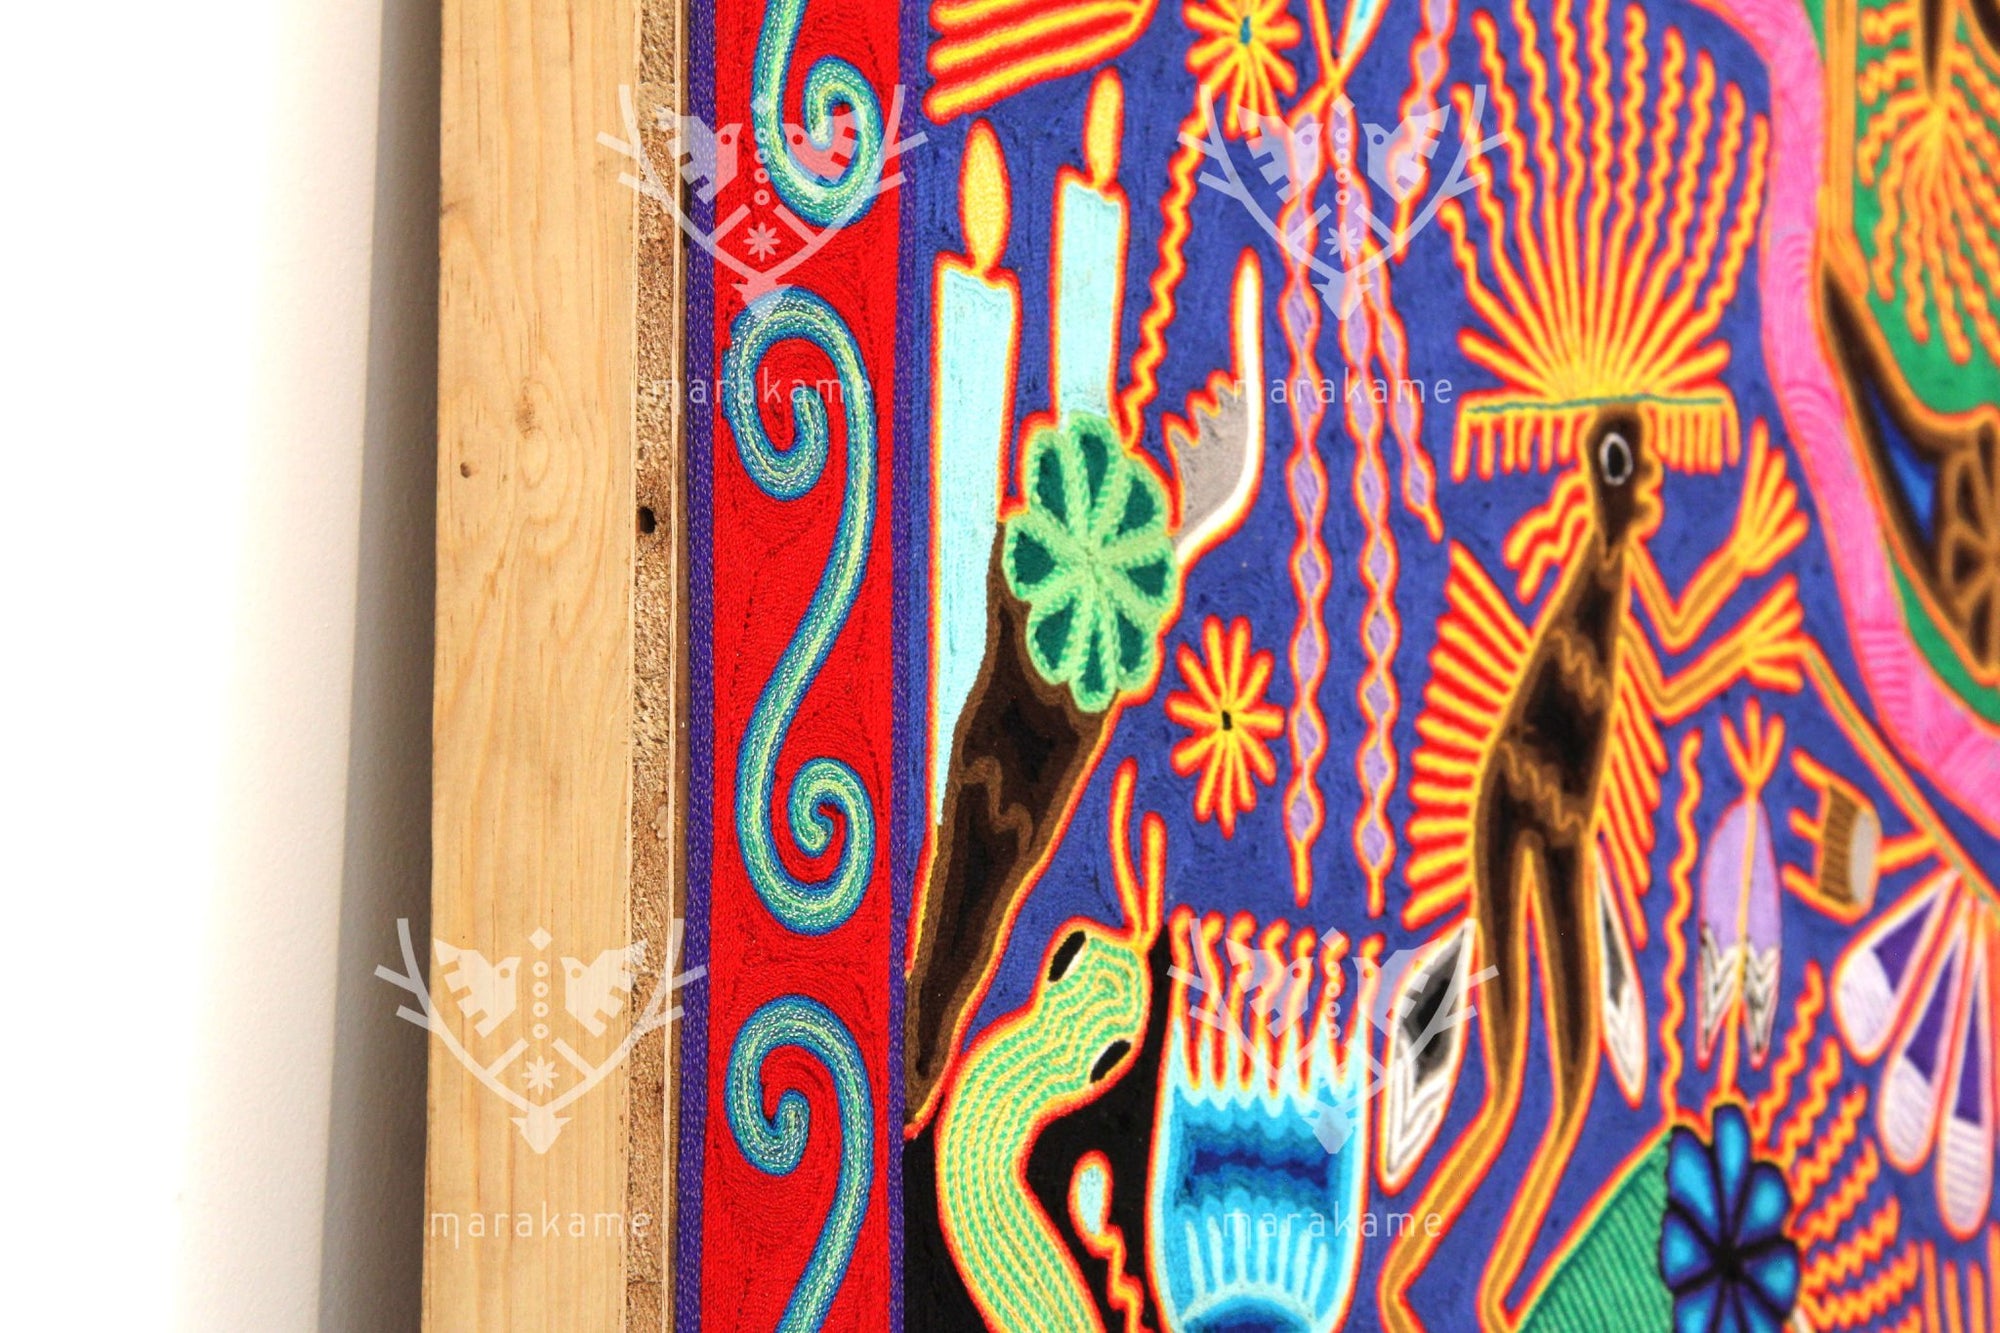 Nierika de Estambre Cuadro Huichol - Familia de peyote - 2 x 2 m. - Arte Huichol - Marakame